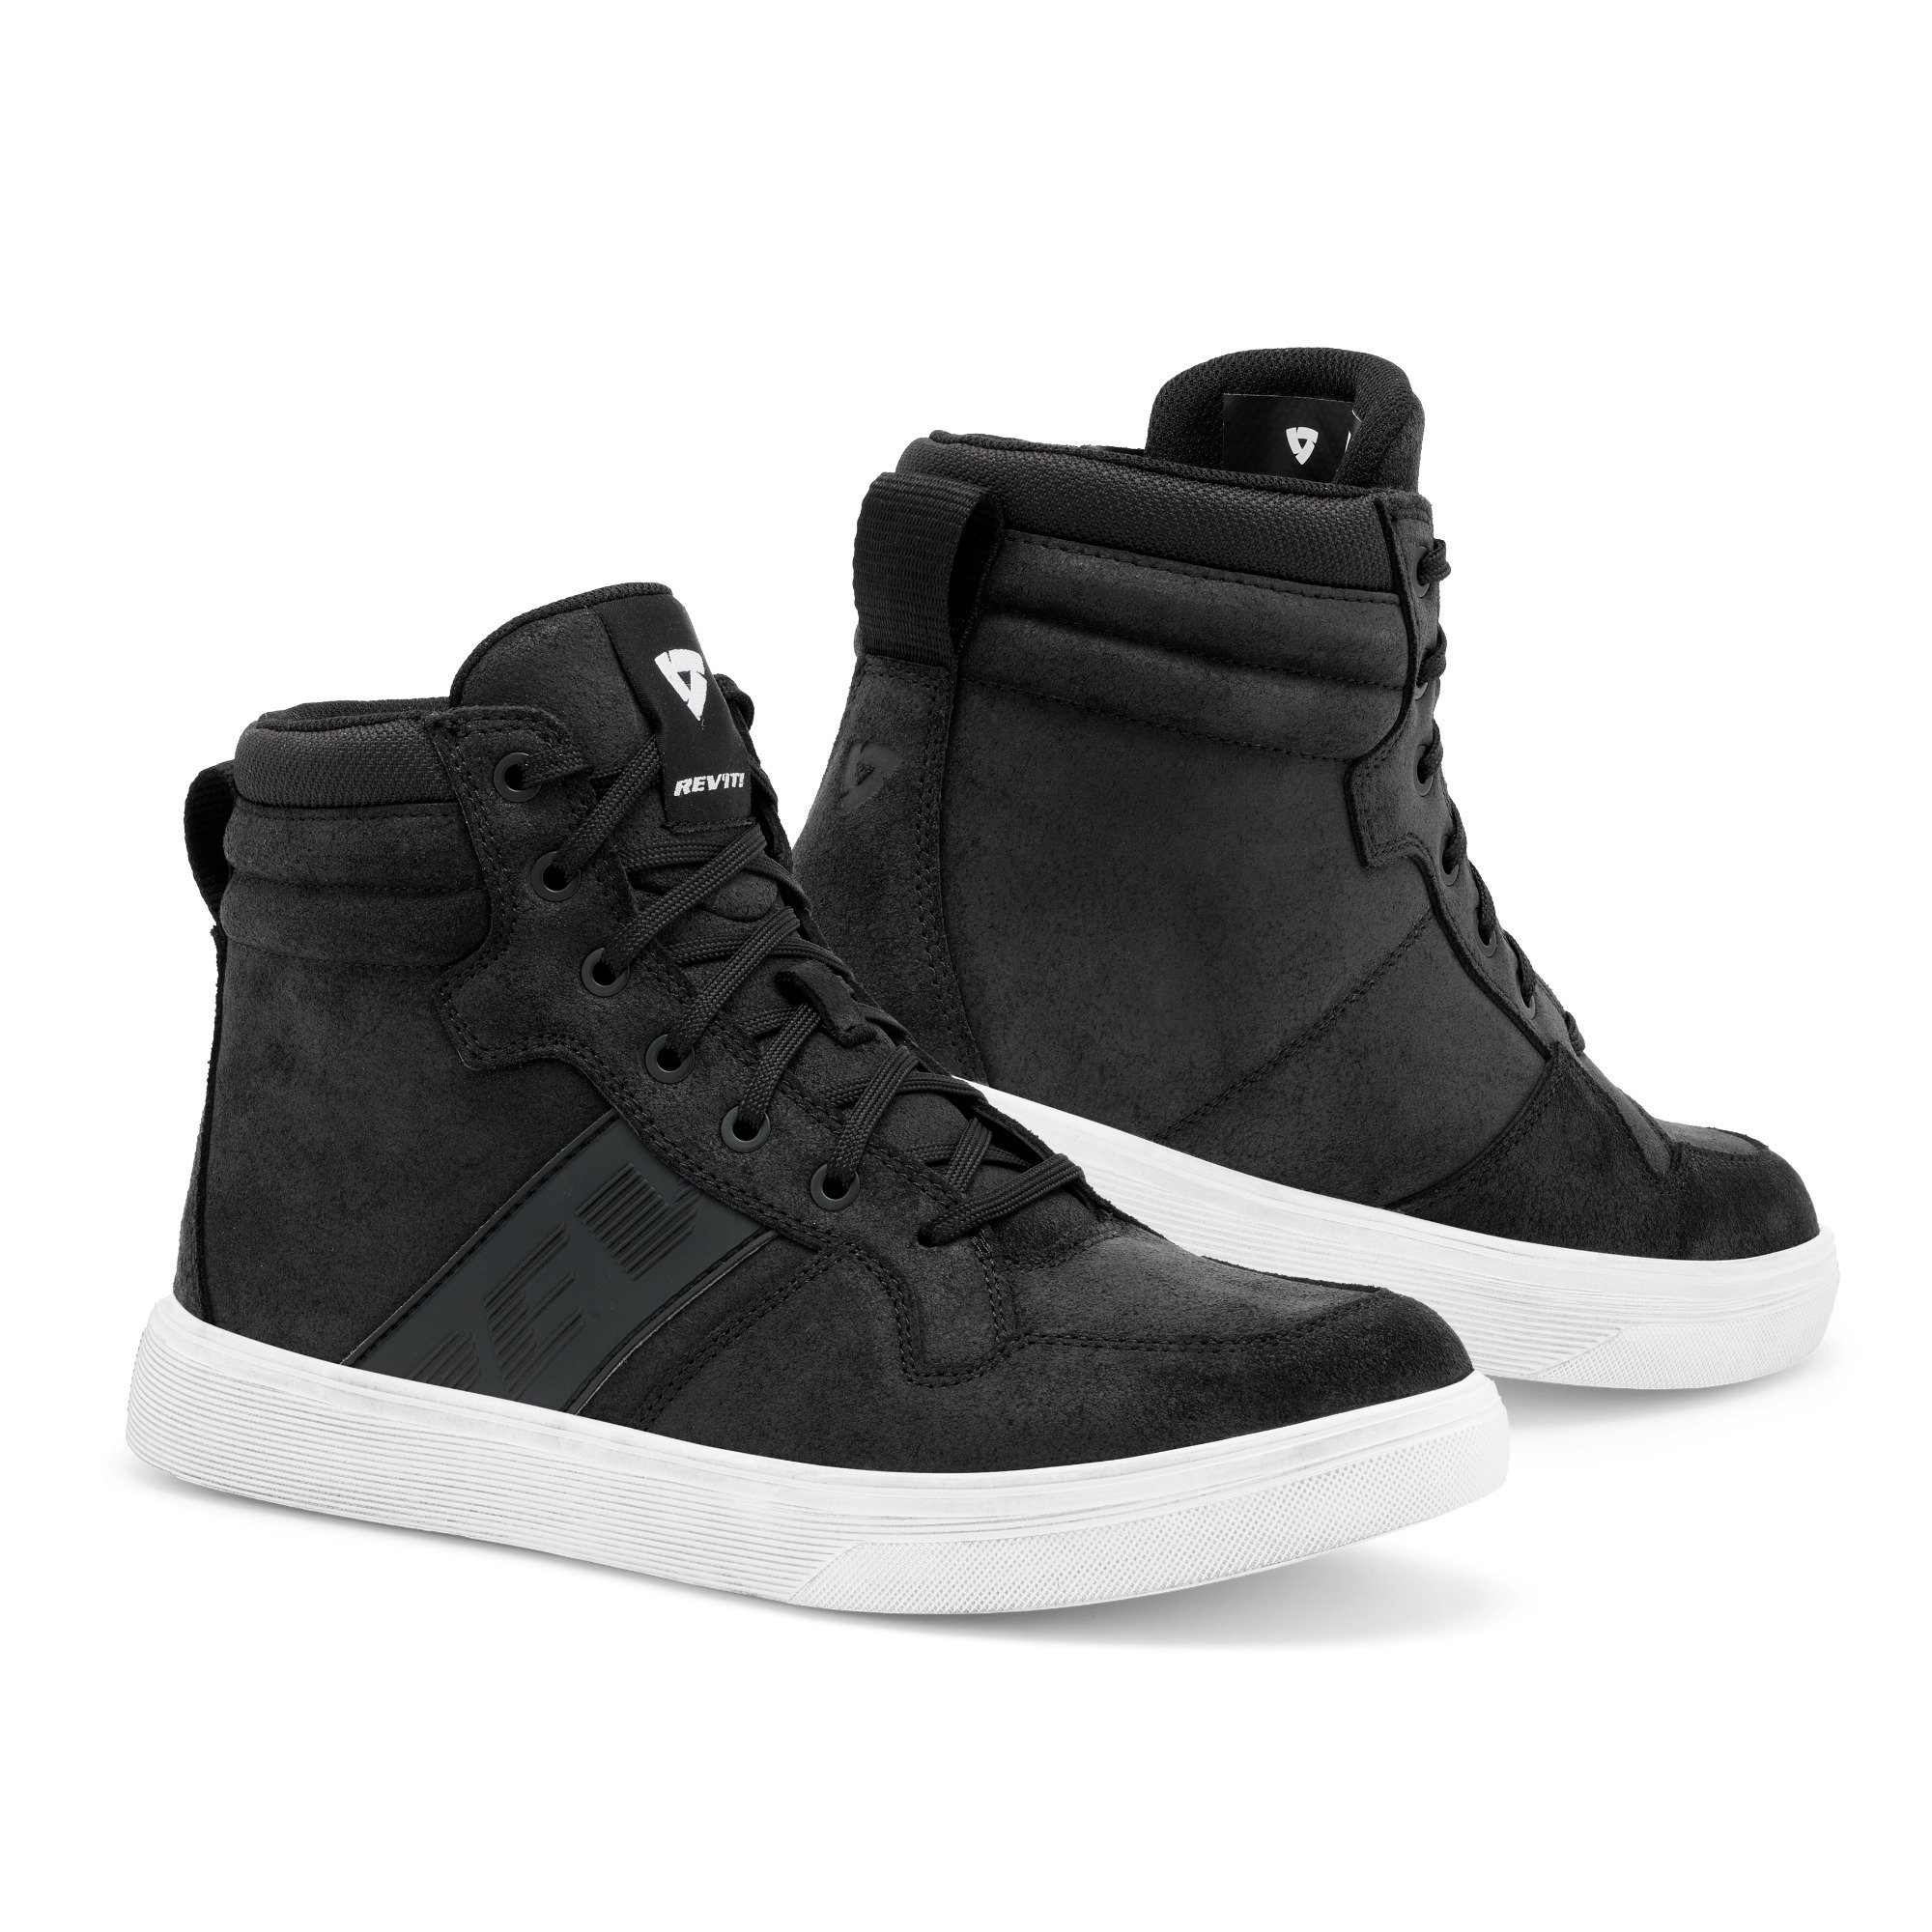 Image of REV'IT! Kick Shoes Black White Size 46 EN